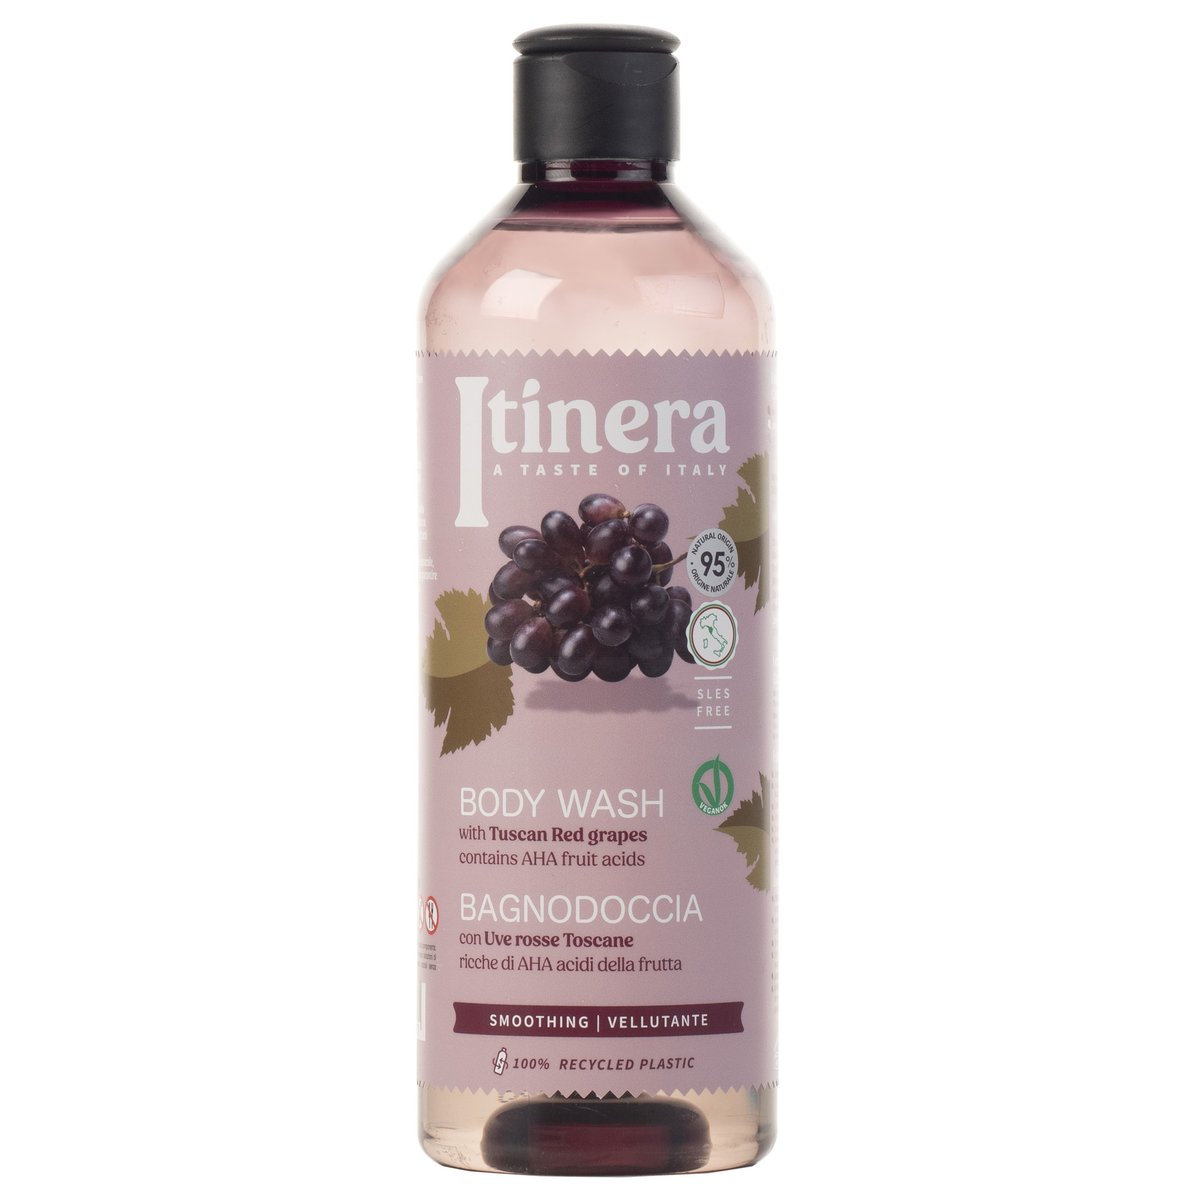 Itinera, Wygładzający płyn do mycia ciała z toskańskimi czerwonymi winogronami, 95% naturalnych składników, 2x370ml